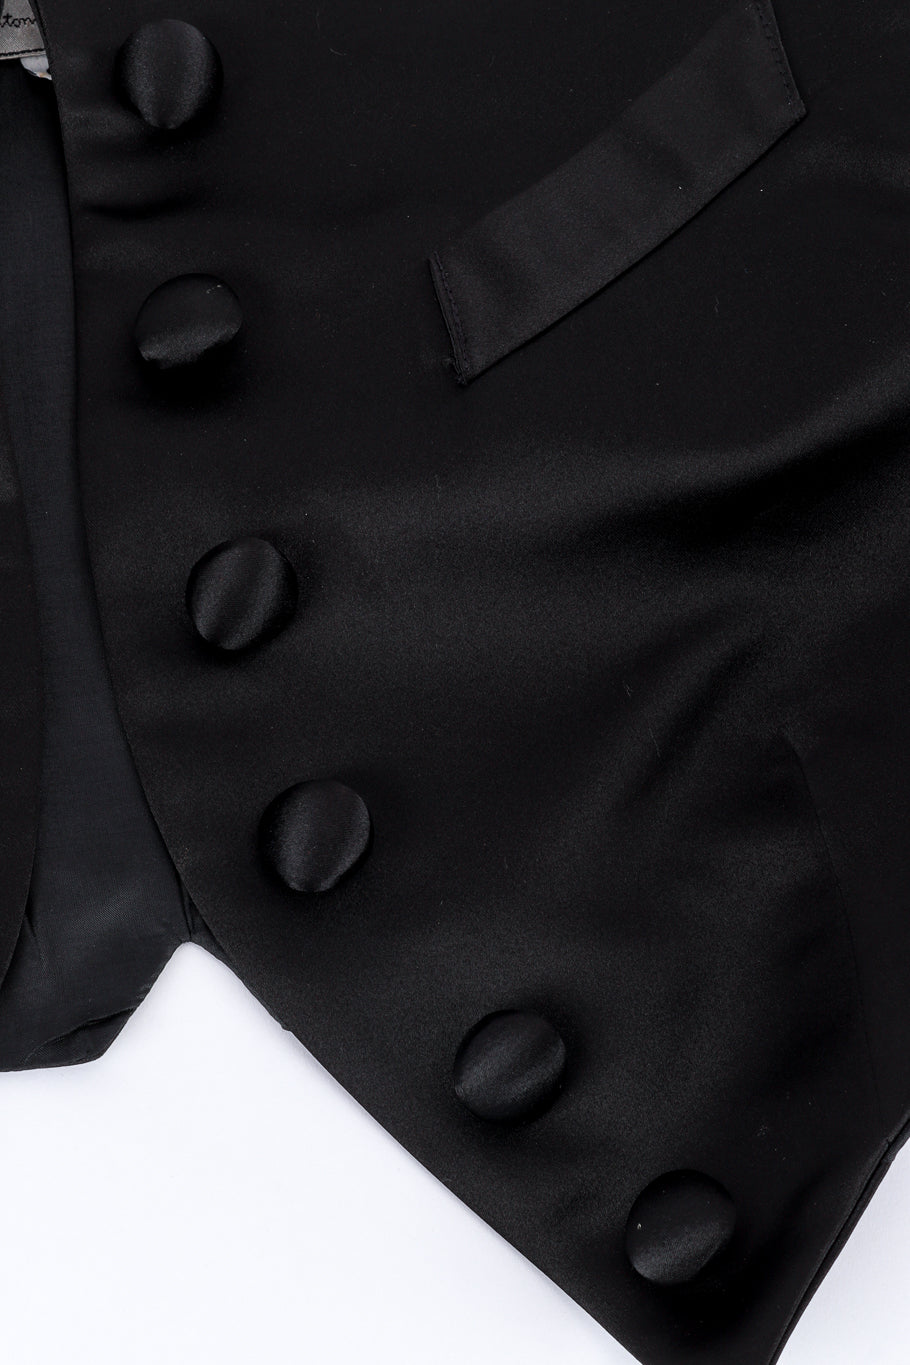 Vintage Antonio Garcia Pointed Bolero Jacket front button closure closeup @recess la